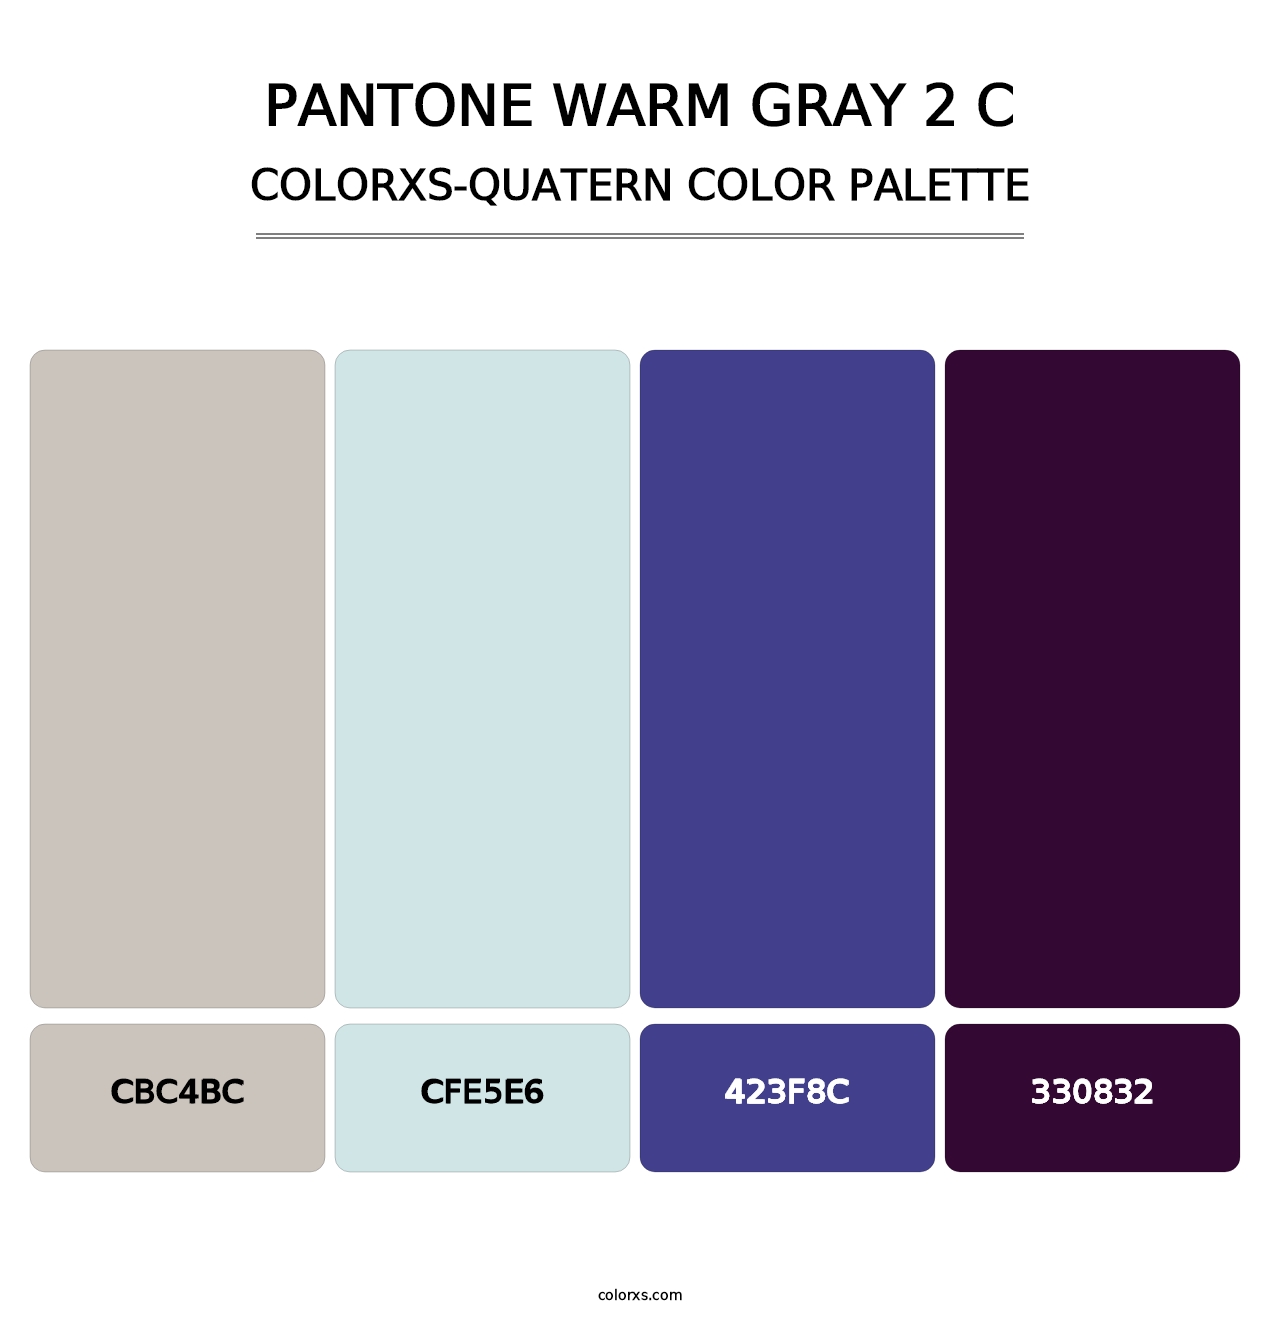 PANTONE Warm Gray 2 C - Colorxs Quatern Palette